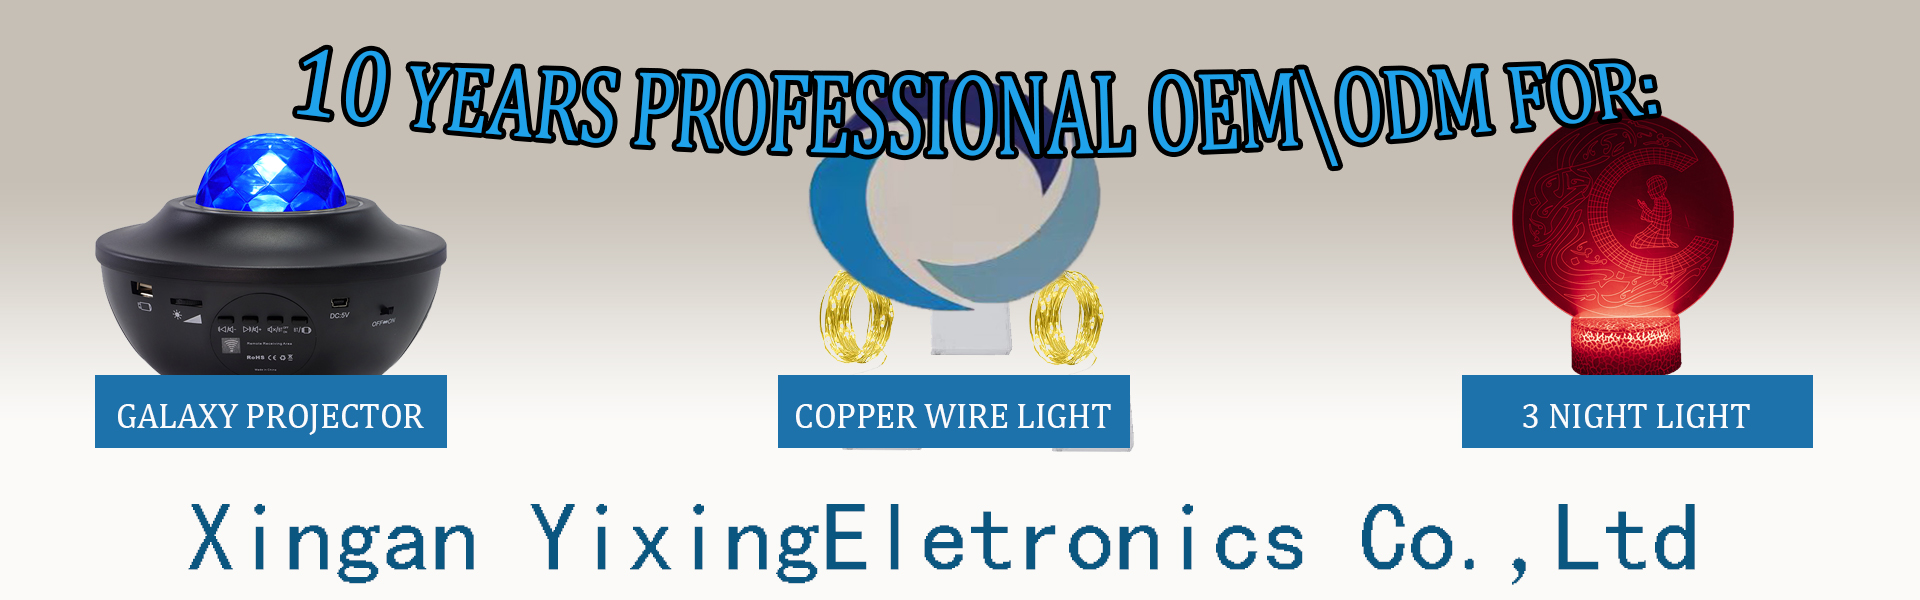 Luz de corda de cobre, projetor estrelado, luz danoite 3D,Xingan Xian Yixing Electronics Co., Ltd.